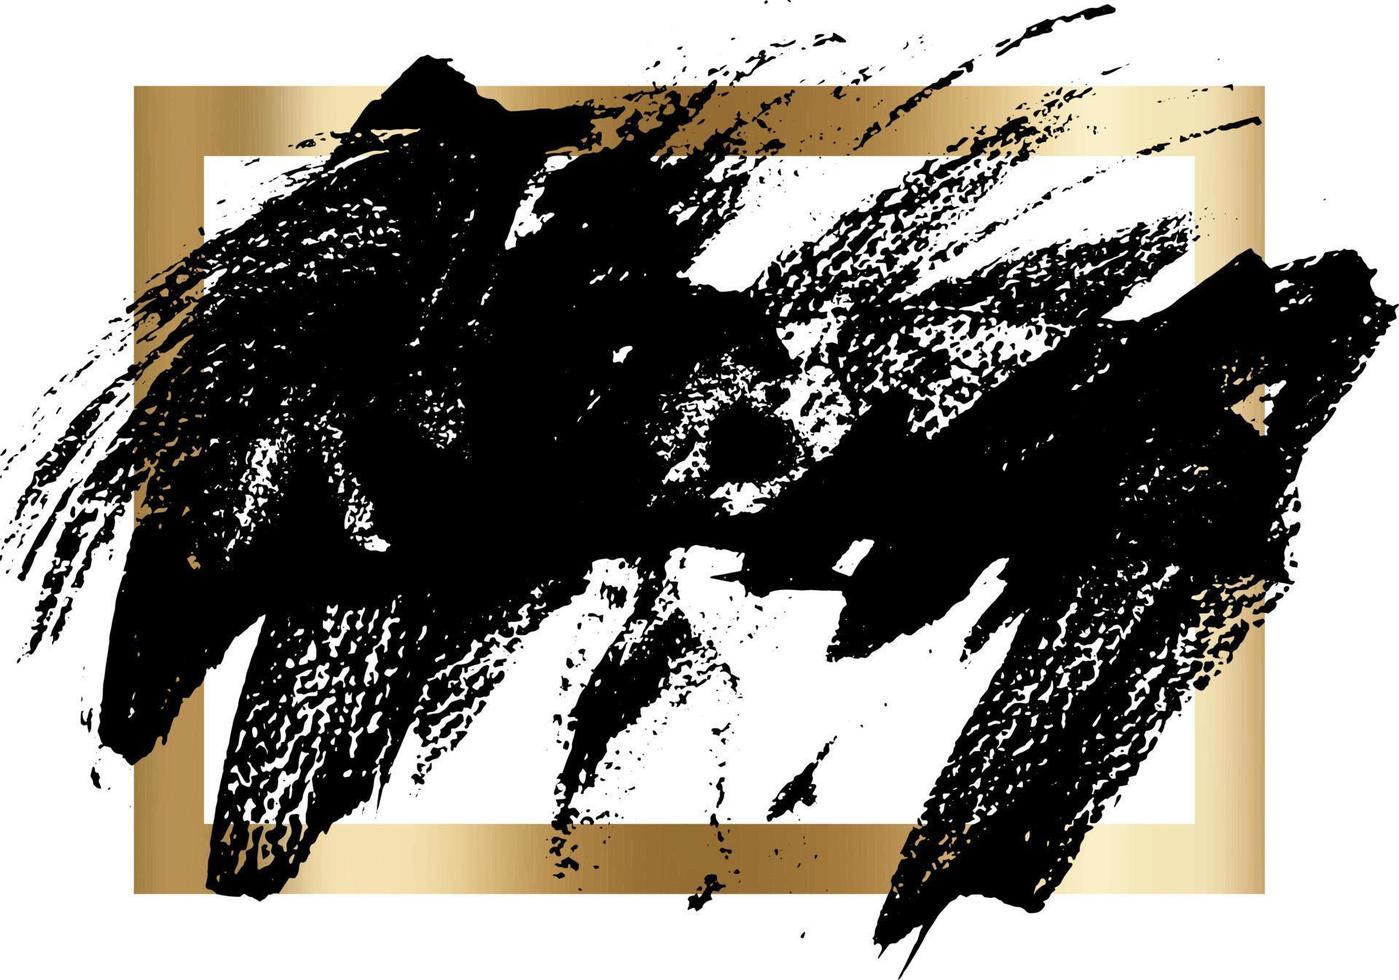 splatter verf textuur in een gouden frame vector achtergrond. nood grunge achtergrond. kras, graan, ruis rechthoek stempel. zwarte spuitvlek inkt. plaats een illustratie over een object om te maken